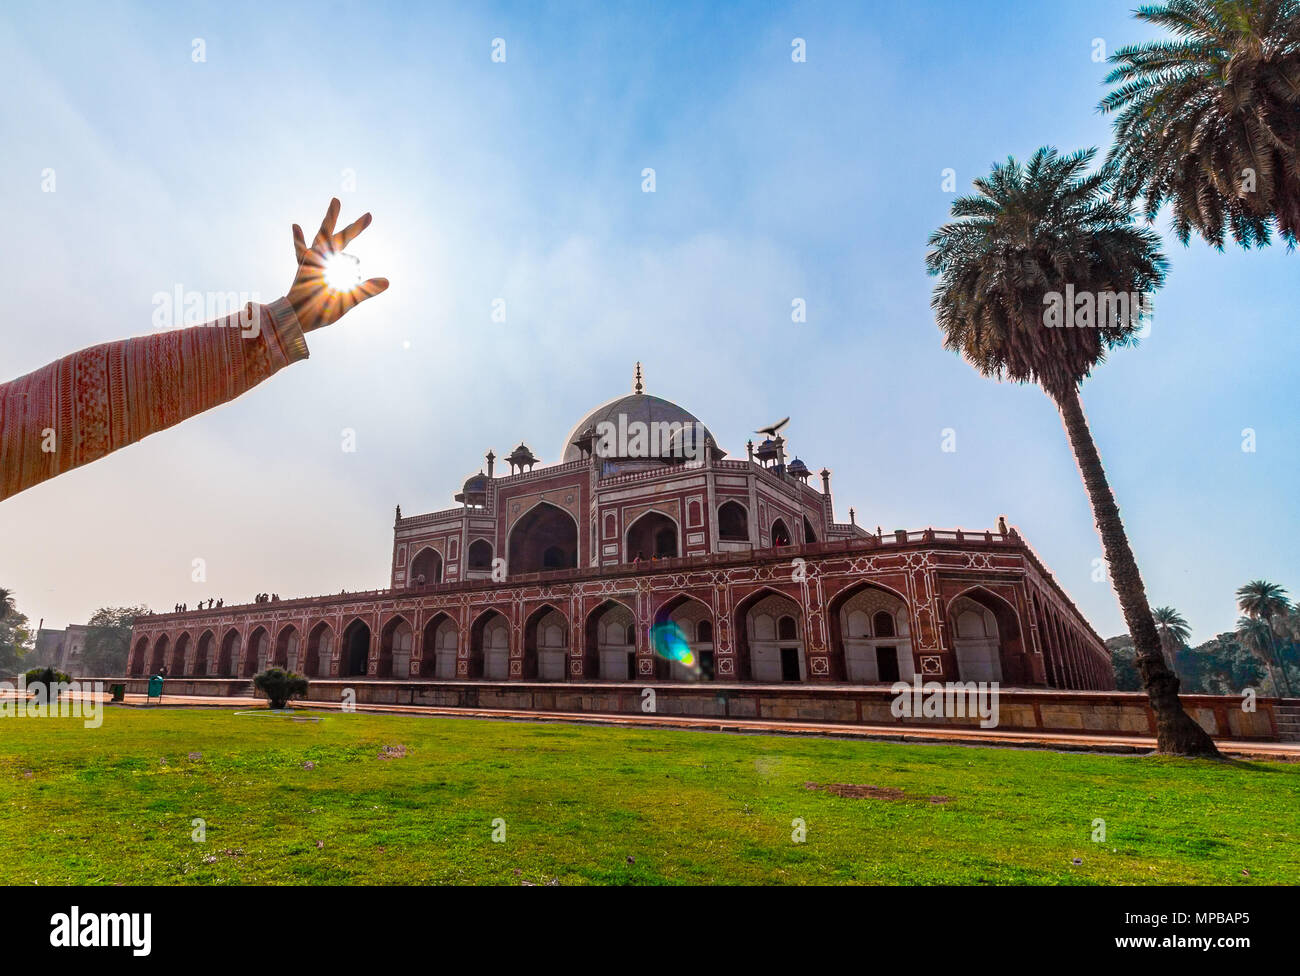 La Tomba di Humayun a Delhi, India. La Tomba di Humayun è anche famoso luogo turistico a Delhi. La gente del posto anche venuto a vedere questo grande architettura persiana. Foto Stock